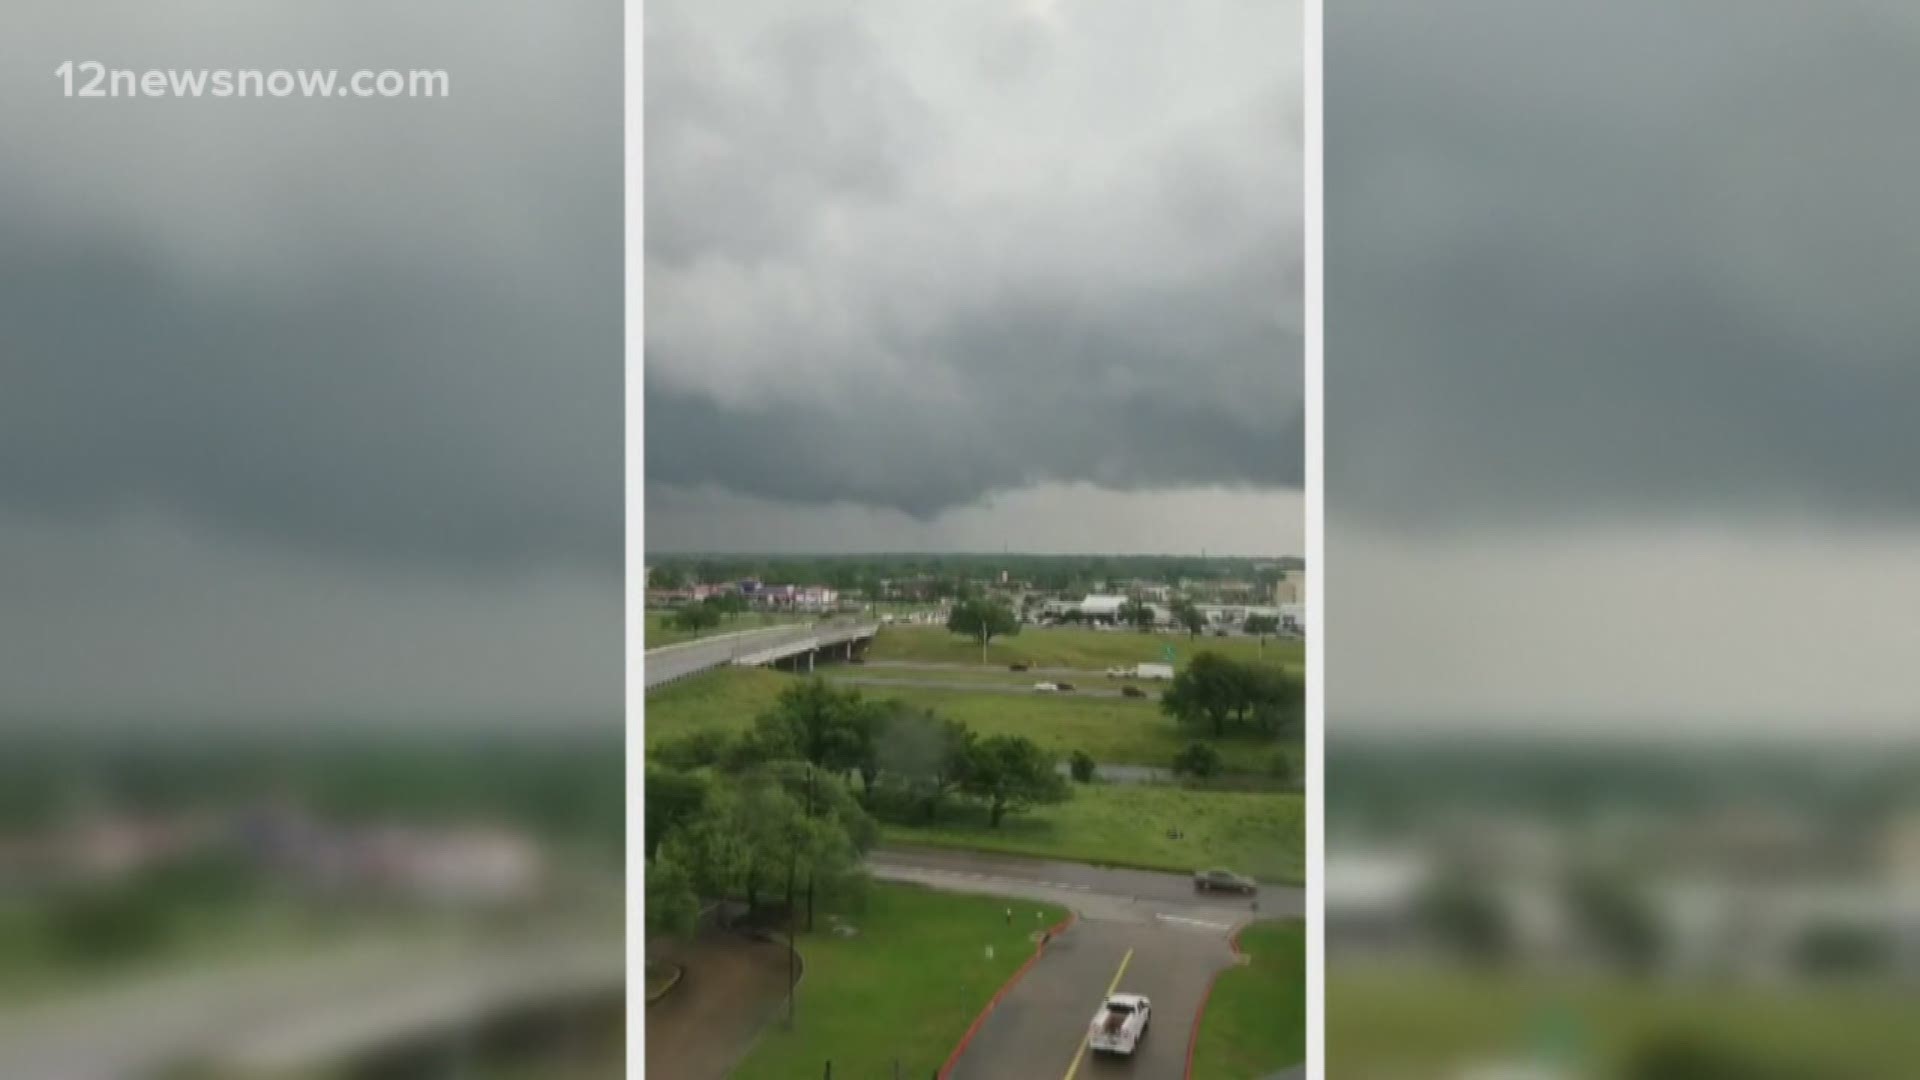 Deadly tornadoes rip through Texas, Louisiana Wednesday night